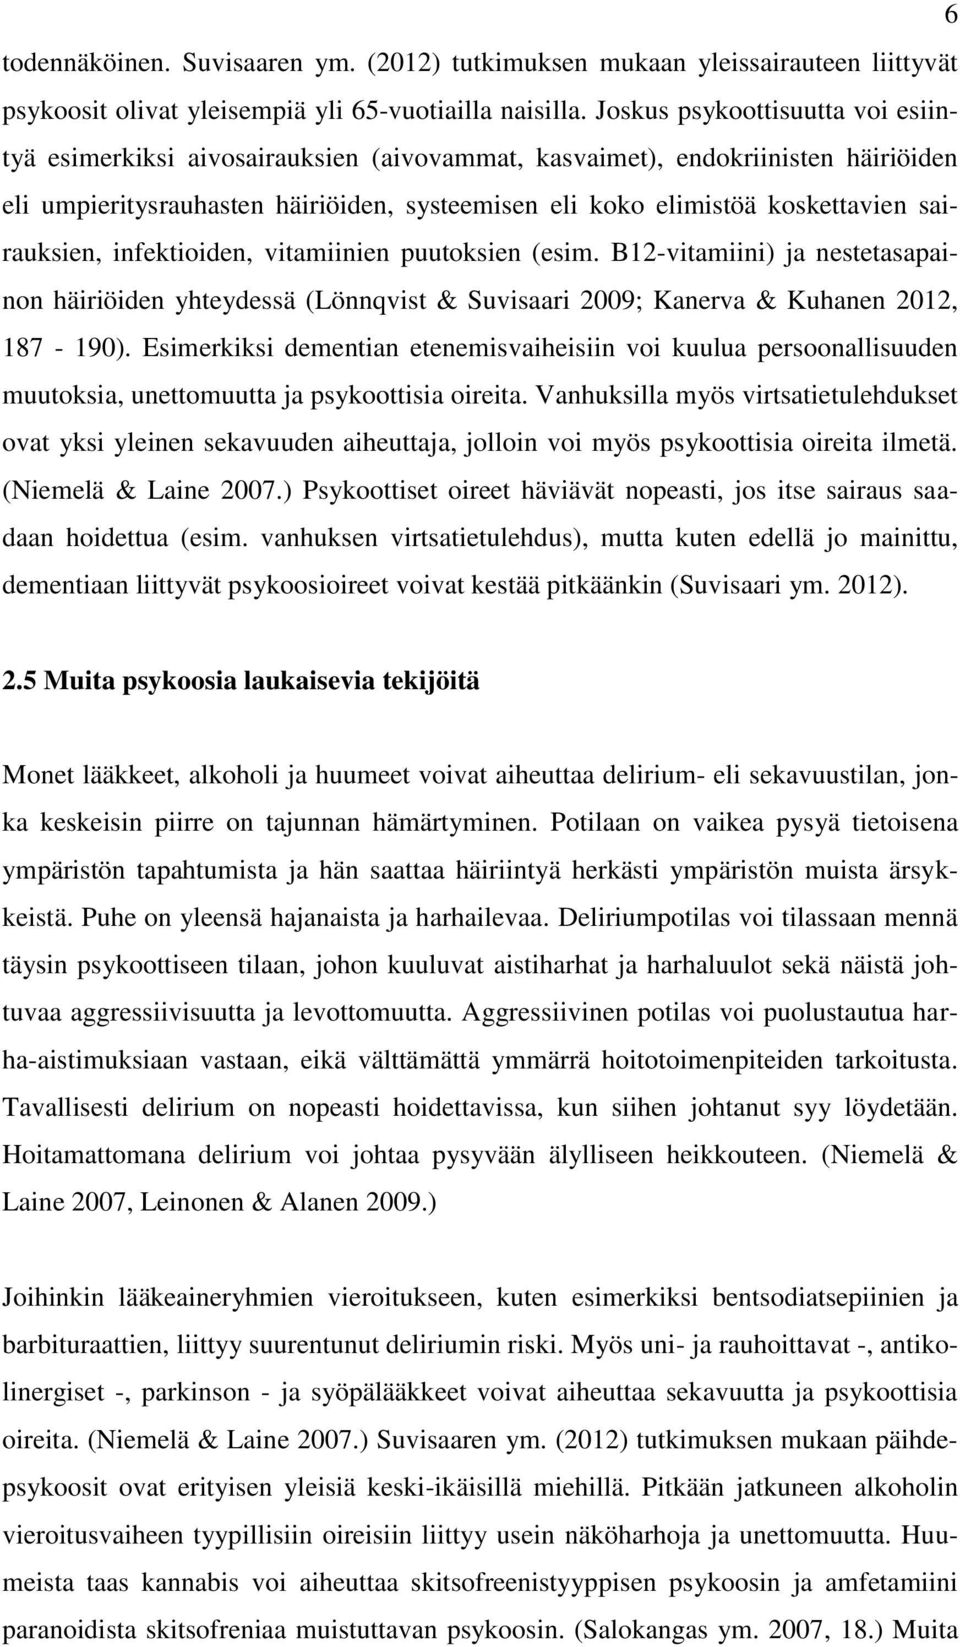 sairauksien, infektioiden, vitamiinien puutoksien (esim. B12-vitamiini) ja nestetasapainon häiriöiden yhteydessä (Lönnqvist & Suvisaari 2009; Kanerva & Kuhanen 2012, 187-190).